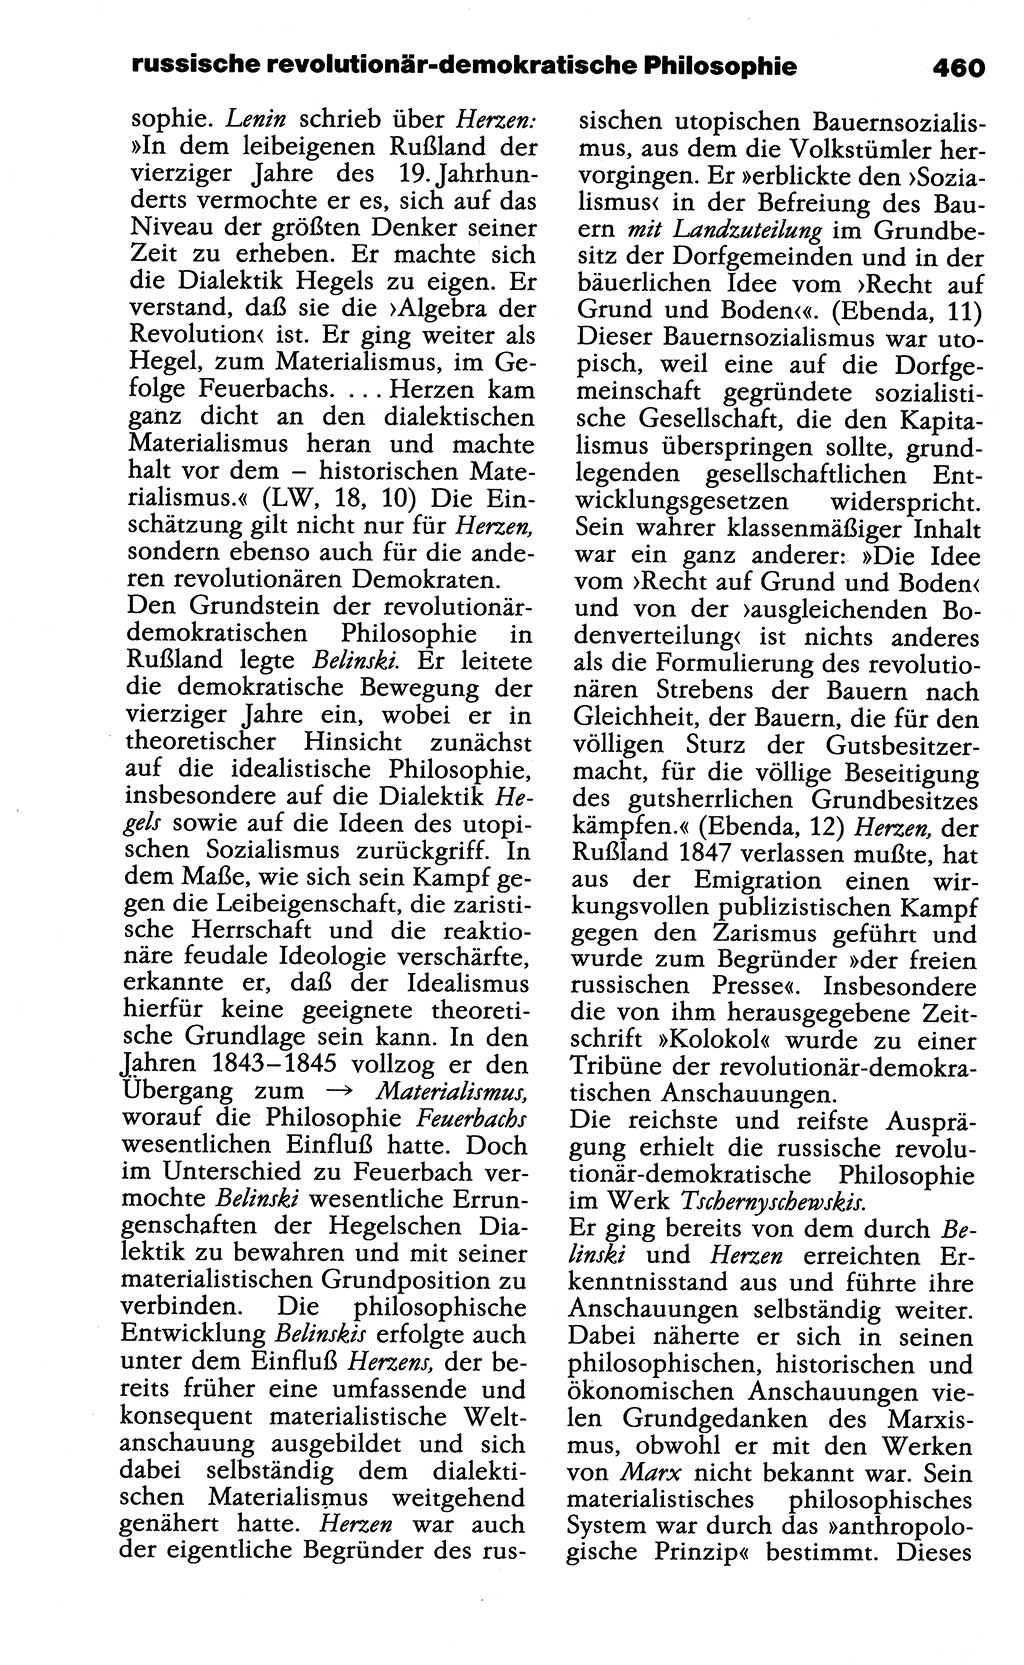 Wörterbuch der marxistisch-leninistischen Philosophie [Deutsche Demokratische Republik (DDR)] 1985, Seite 460 (Wb. ML Phil. DDR 1985, S. 460)